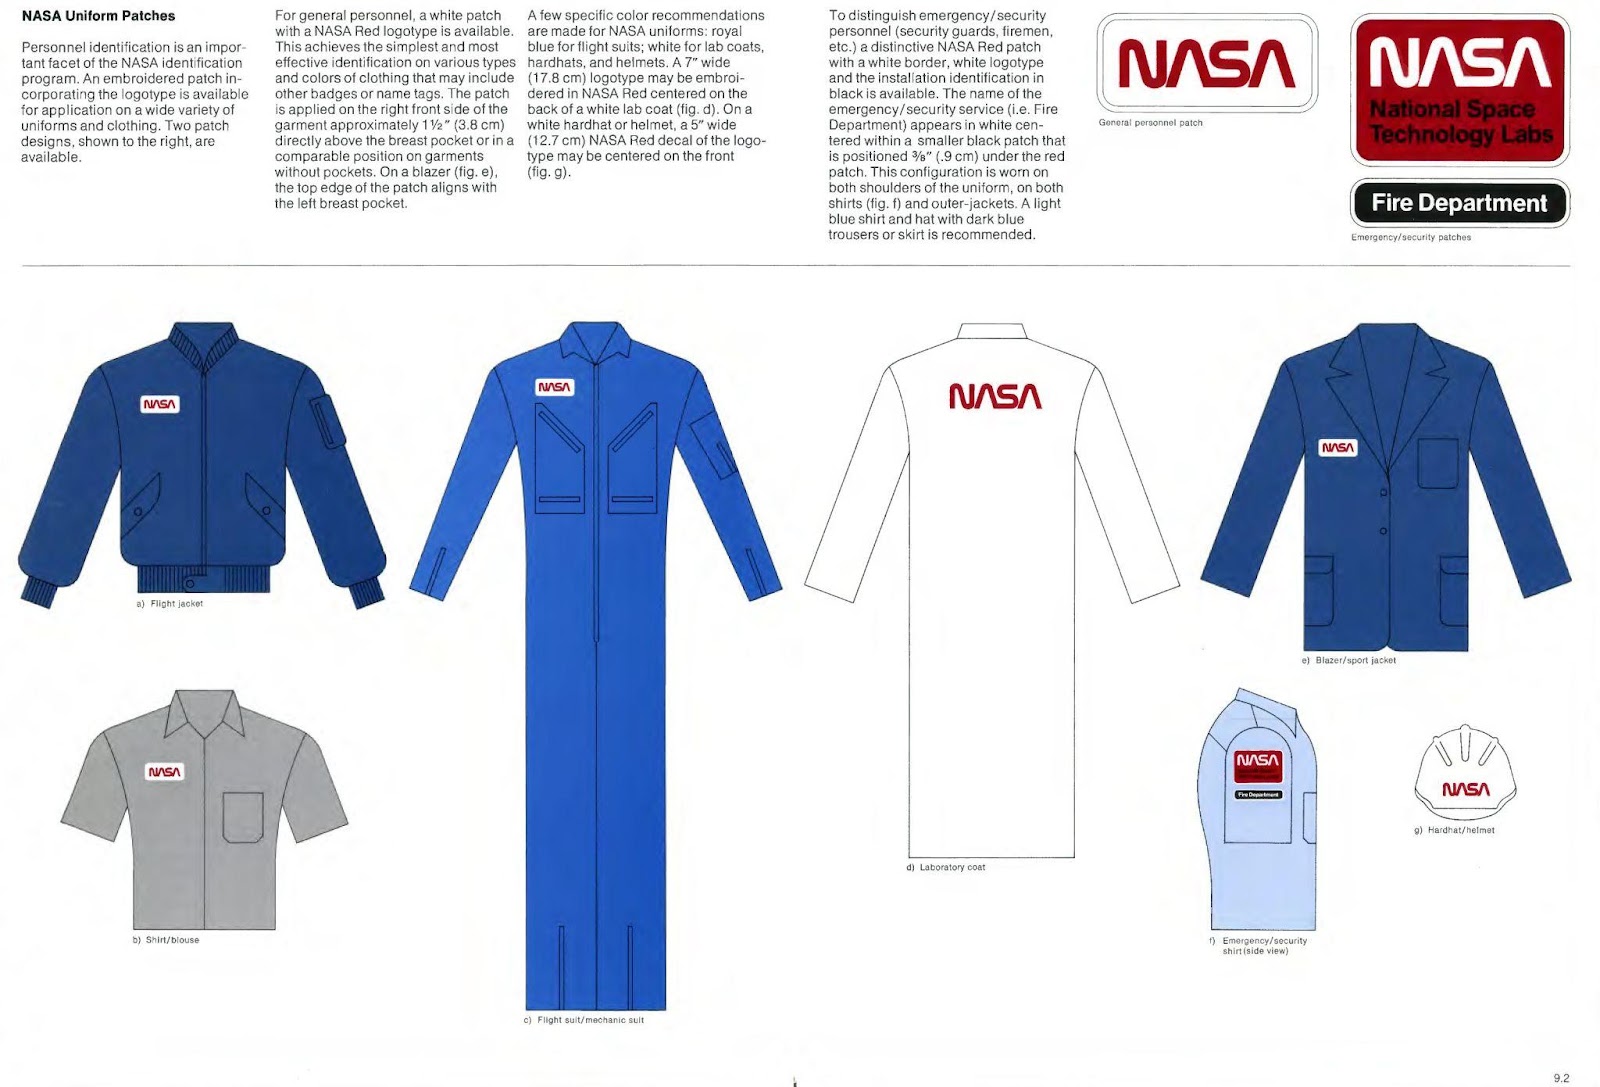 Print dos uniformes da Nasa, mostrando diversos modelos e a inserção da logo nesses modelos